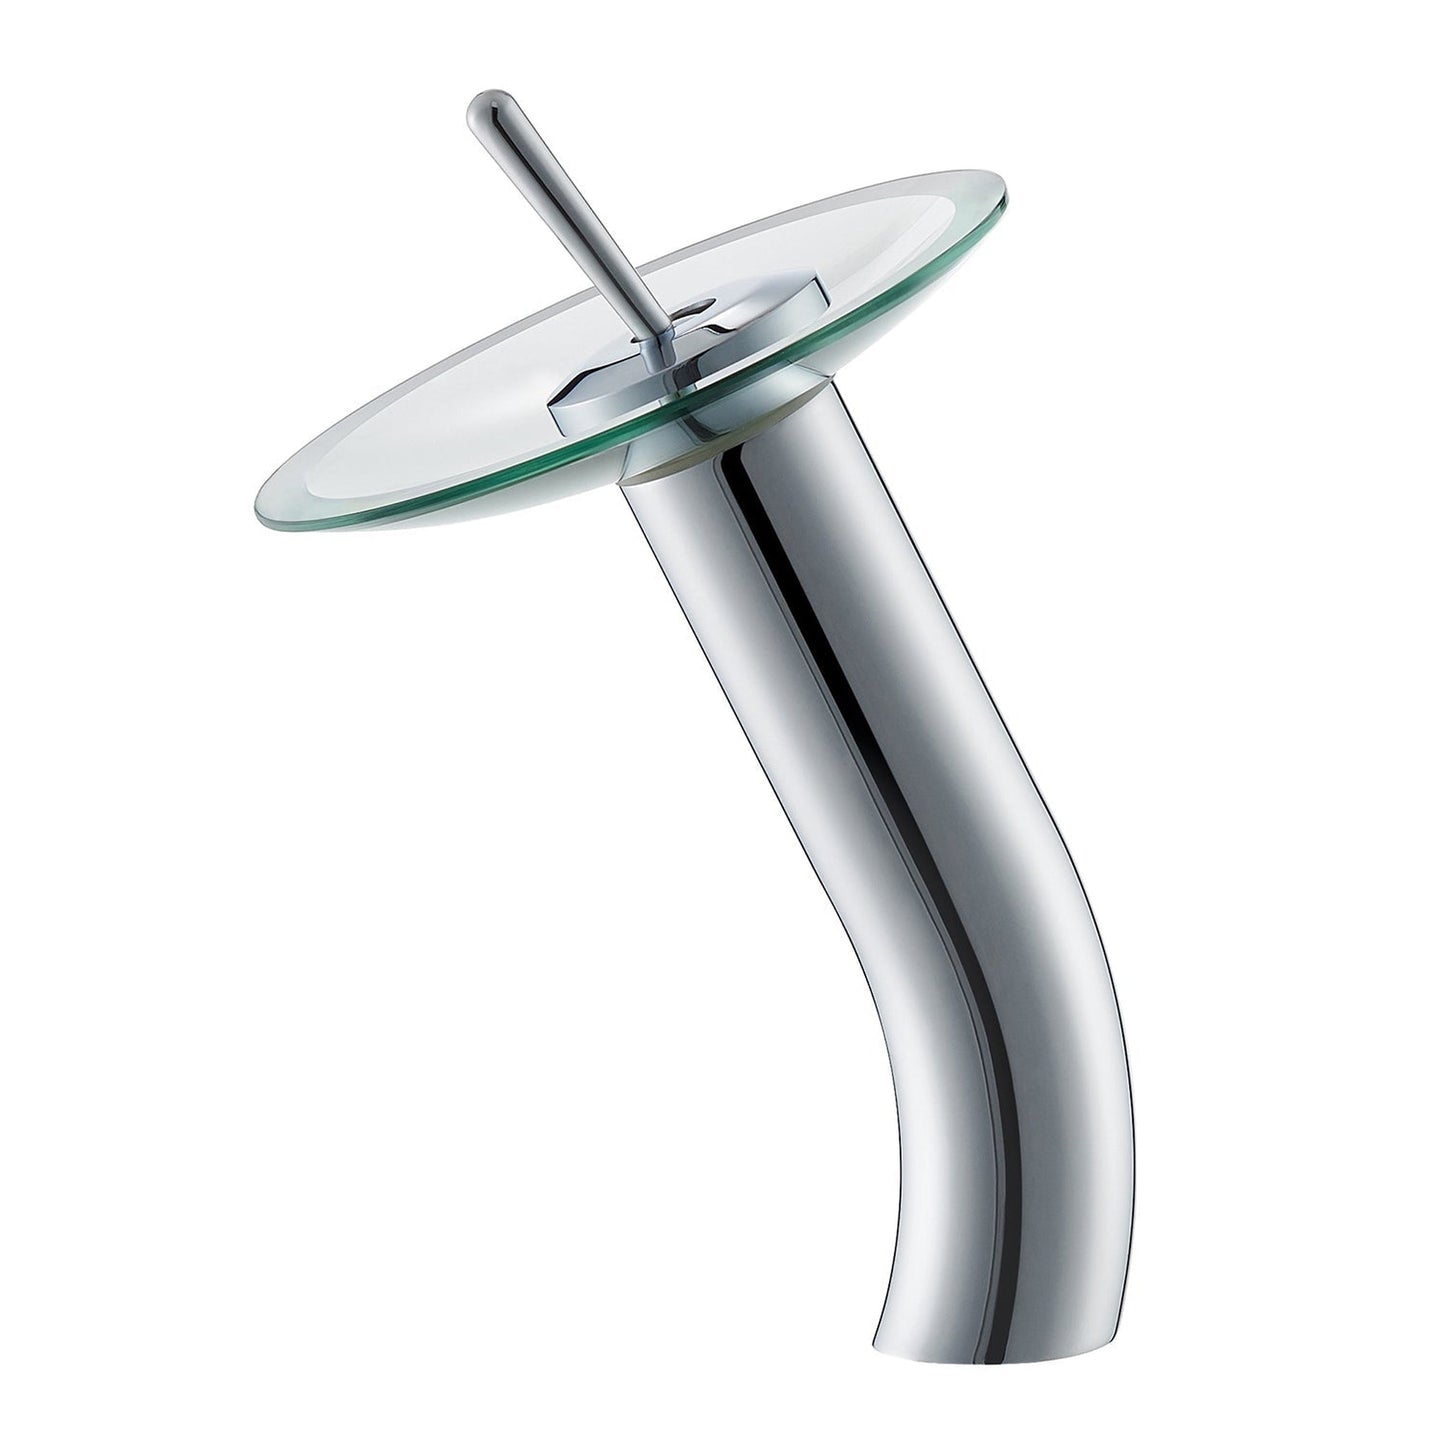 Vinnova Torino 12" Single Hole Polished Chrome High Arc Waterfall Glass Vessel Bathroom Sink Faucet